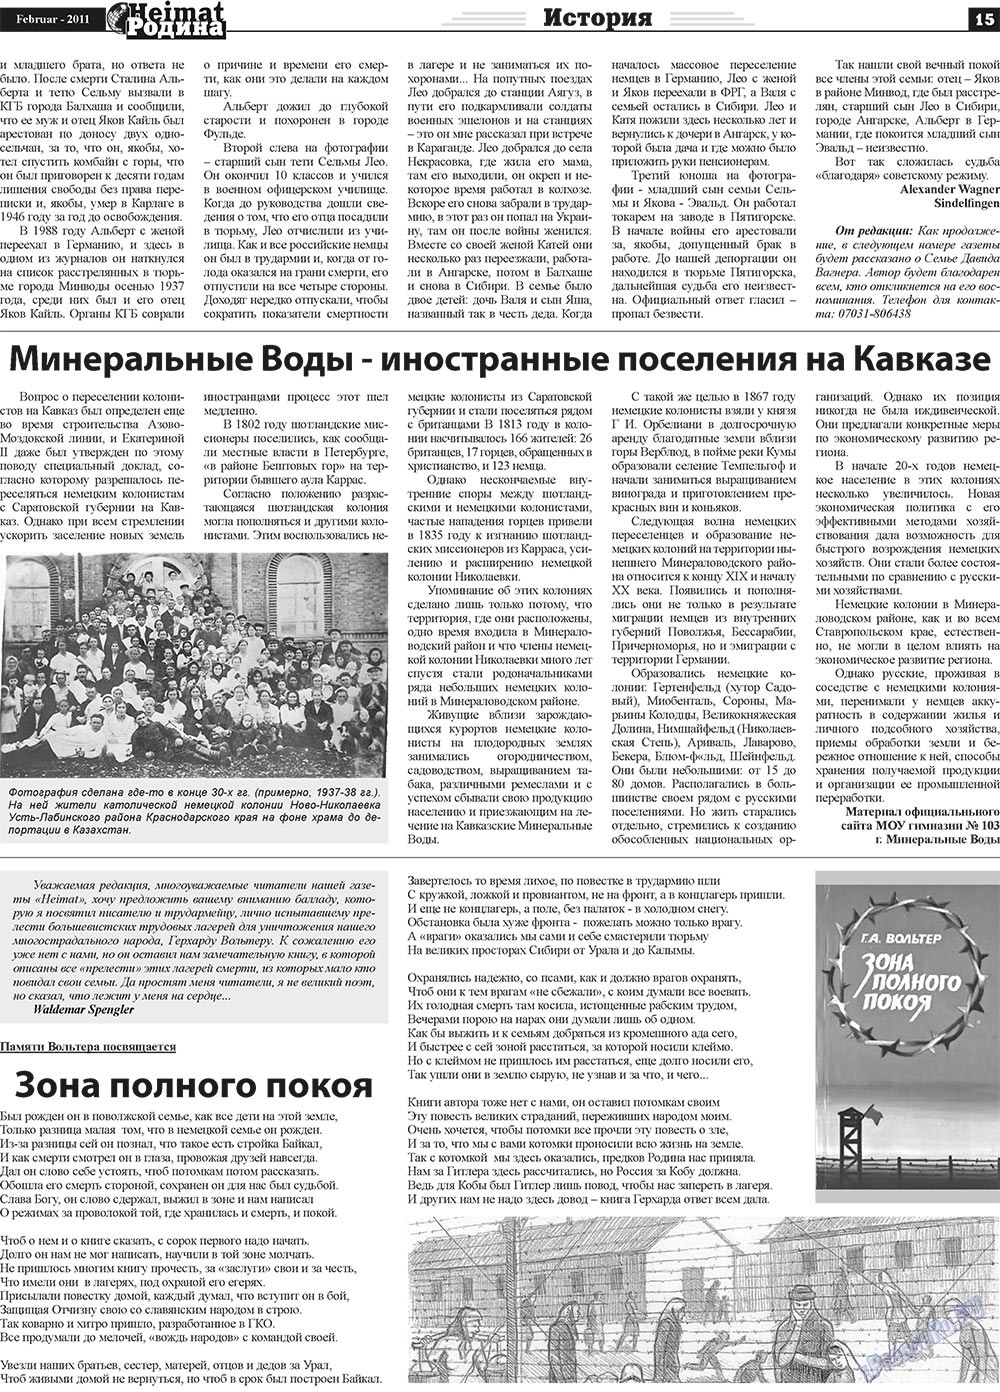 Heimat-Родина (газета). 2011 год, номер 2, стр. 15